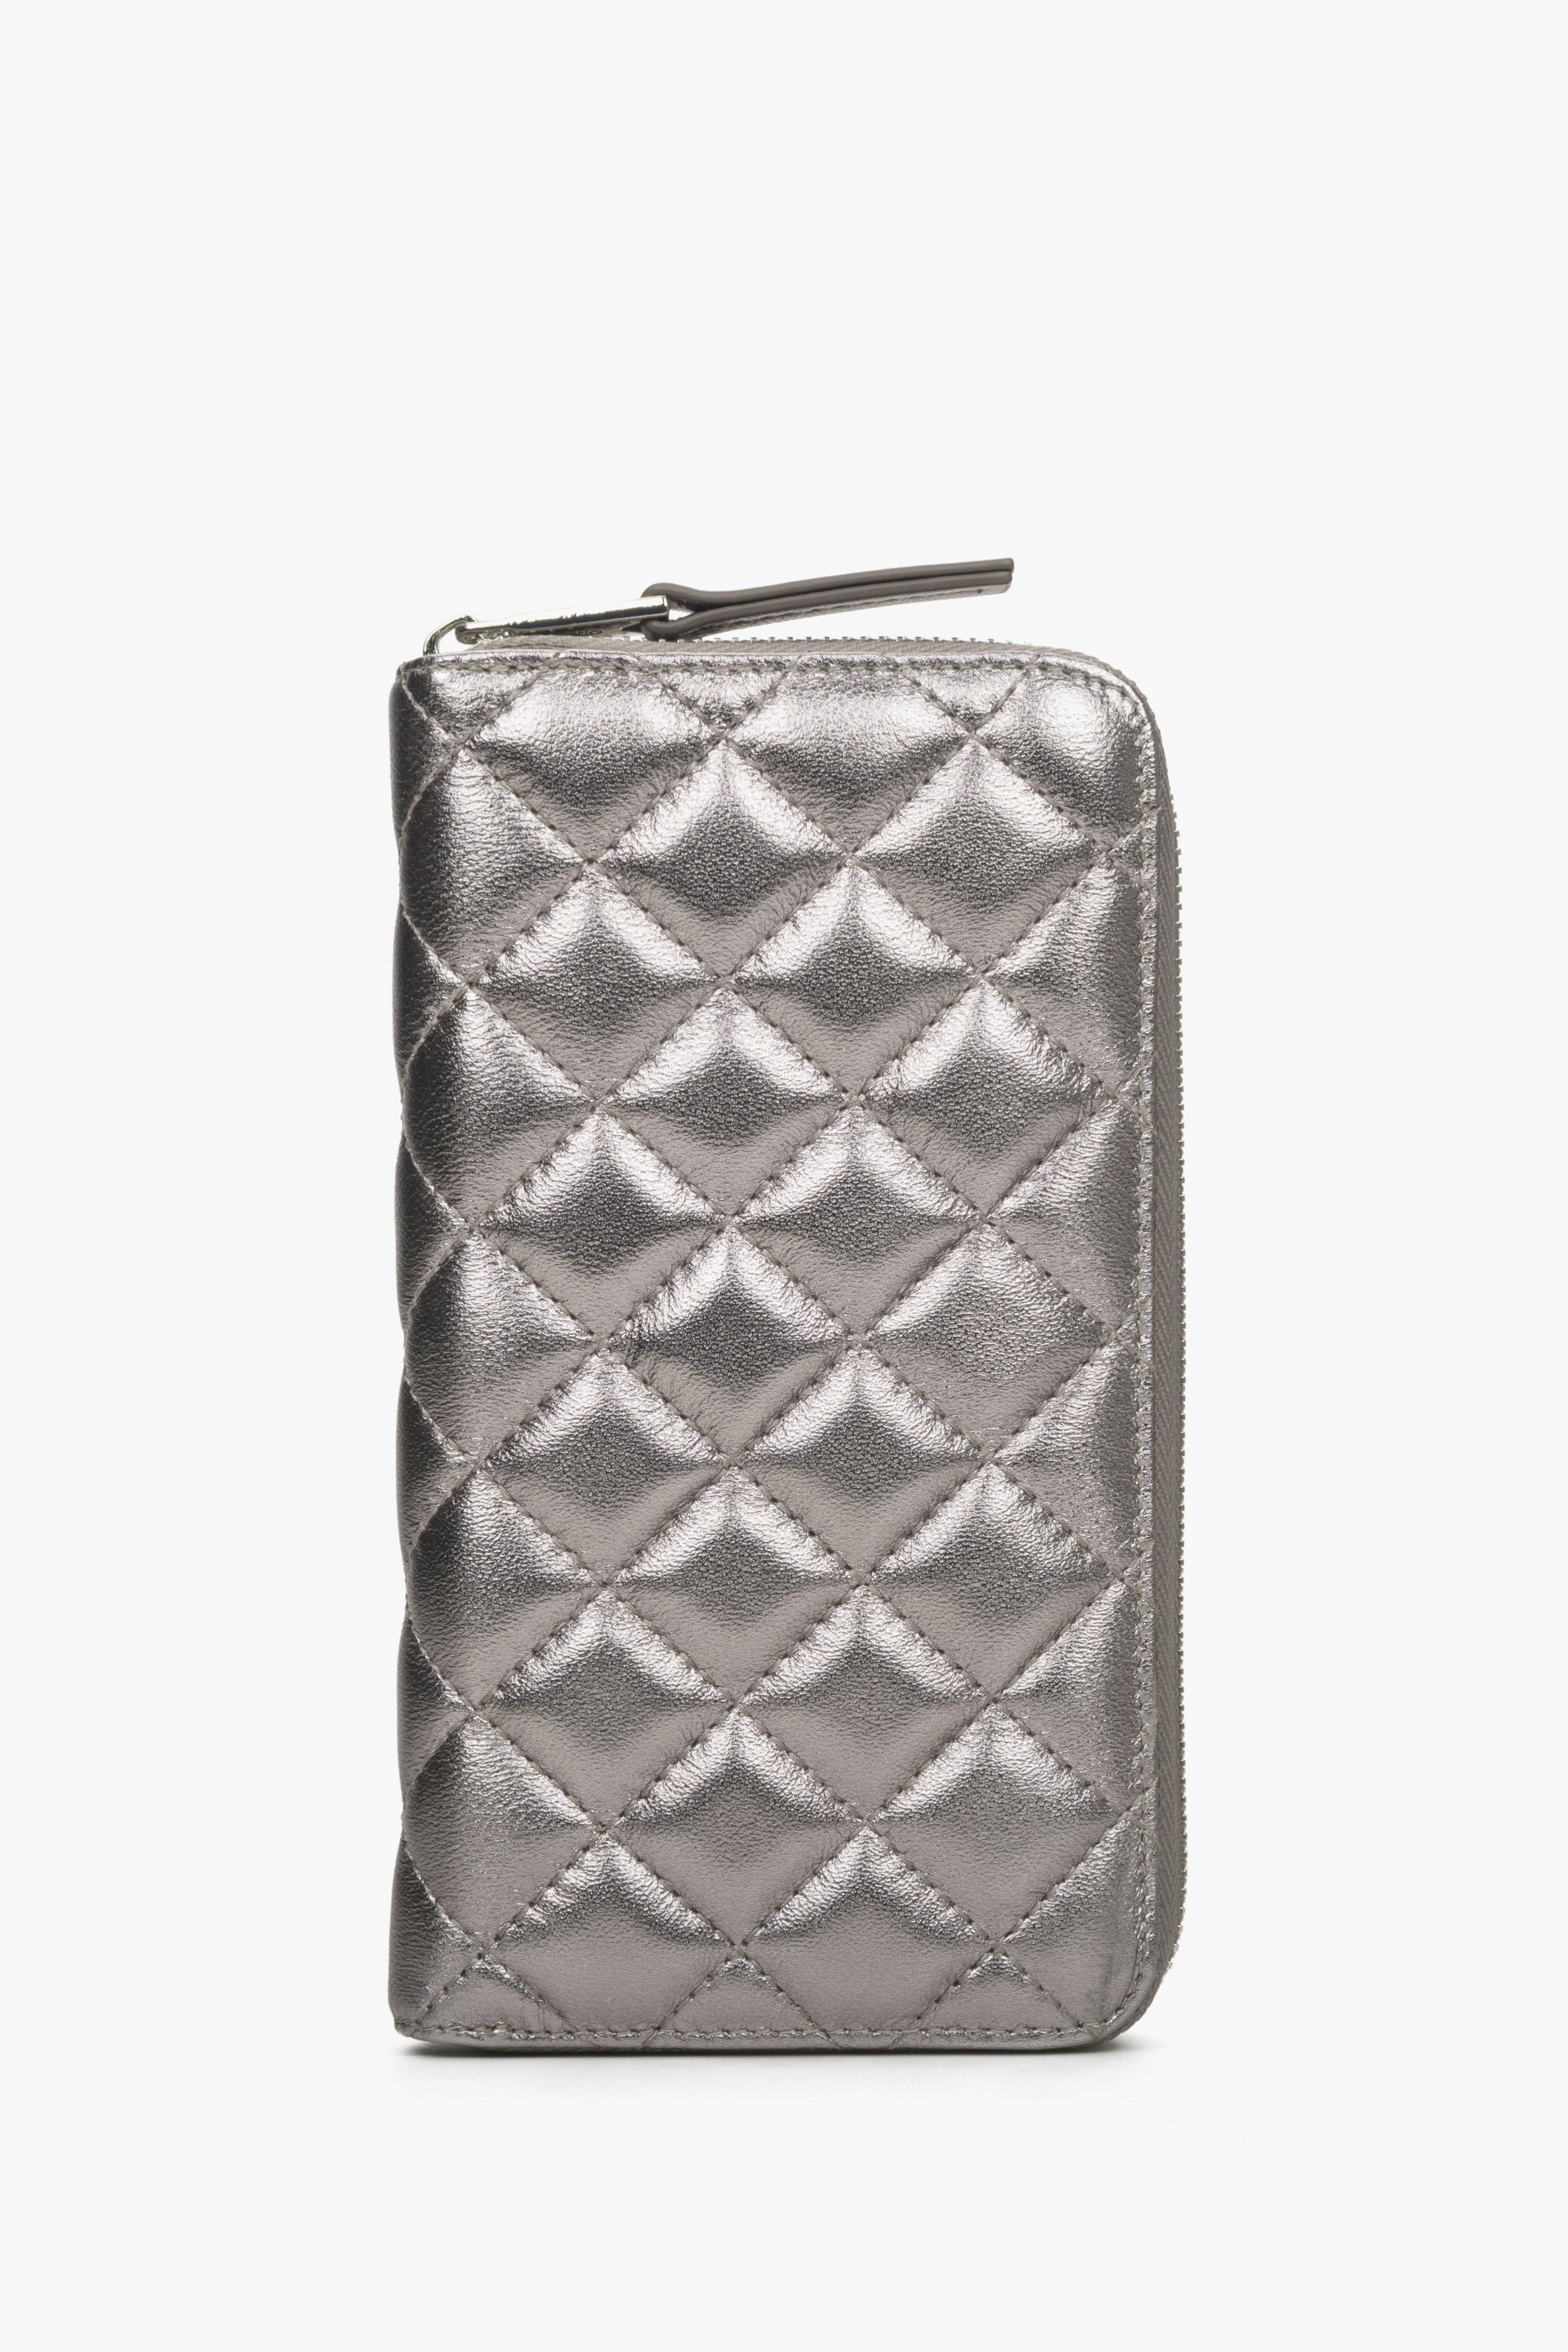 Pojemny skórzany portfel damski w kolorze srebrnym.